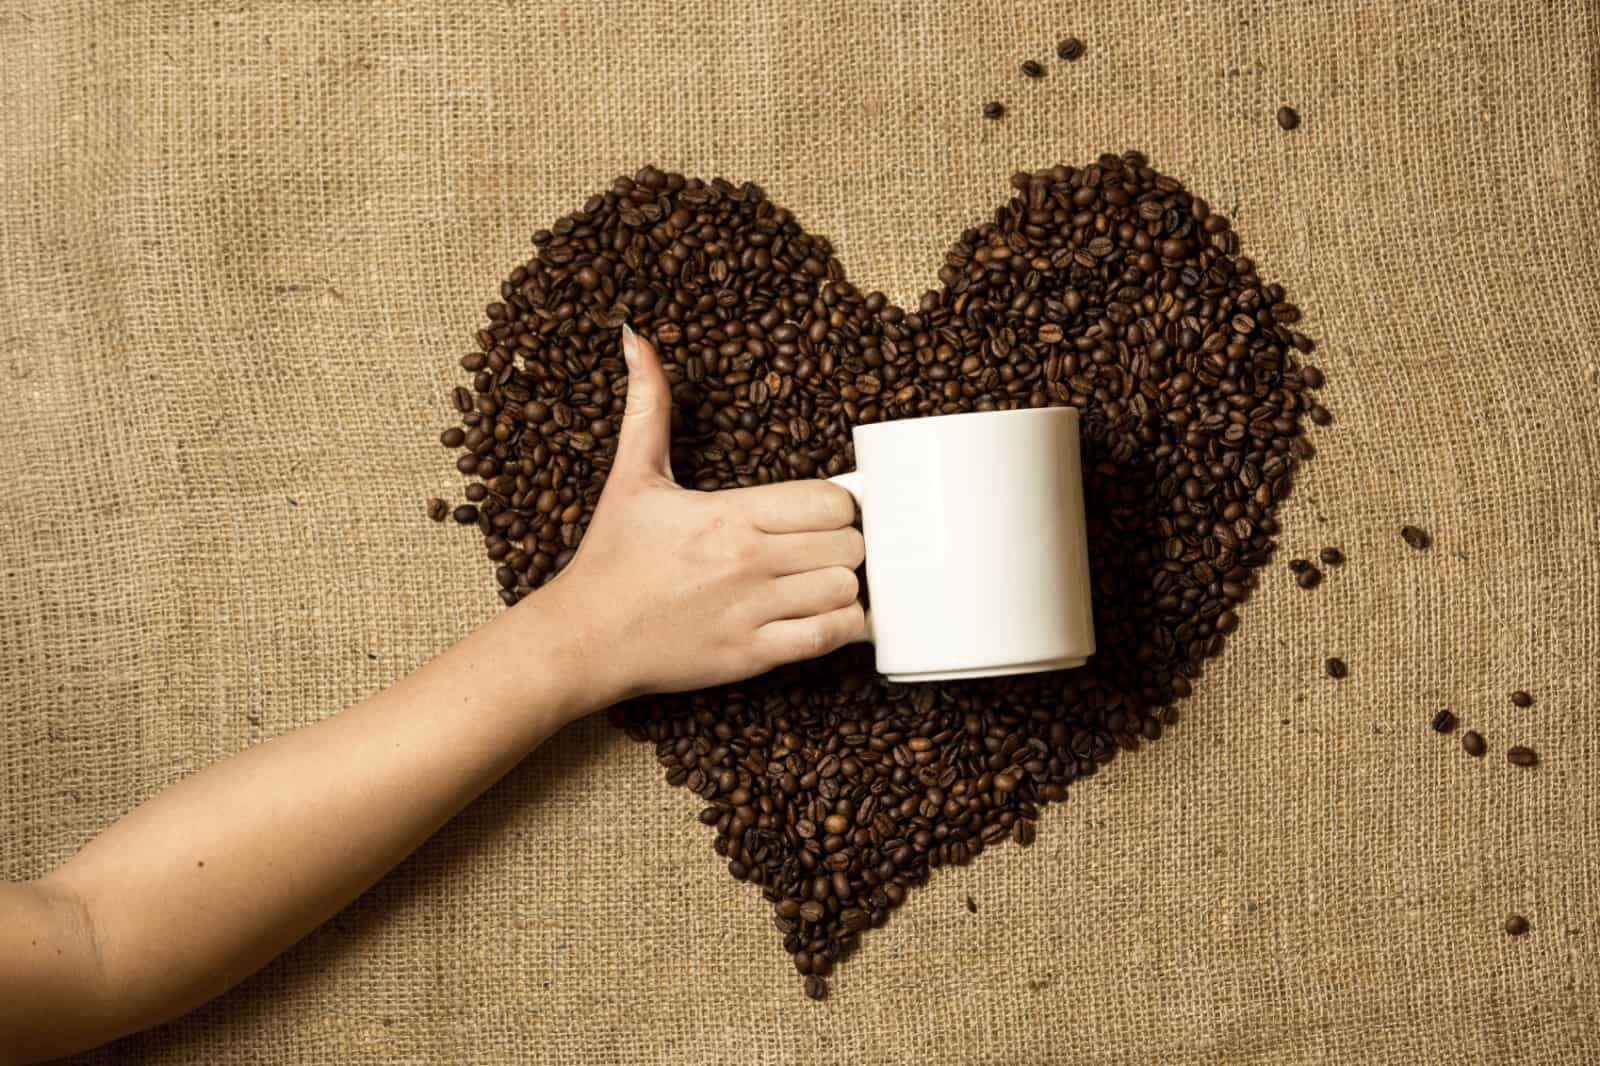 Một năm thế giới tiêu thụ 500 tỉ tách cà phê vì những lợi ích bất ngờ, đặc biệt đối với tuyến giáp mà nghiên cứu gần đây đã chứng minh - Ảnh 1